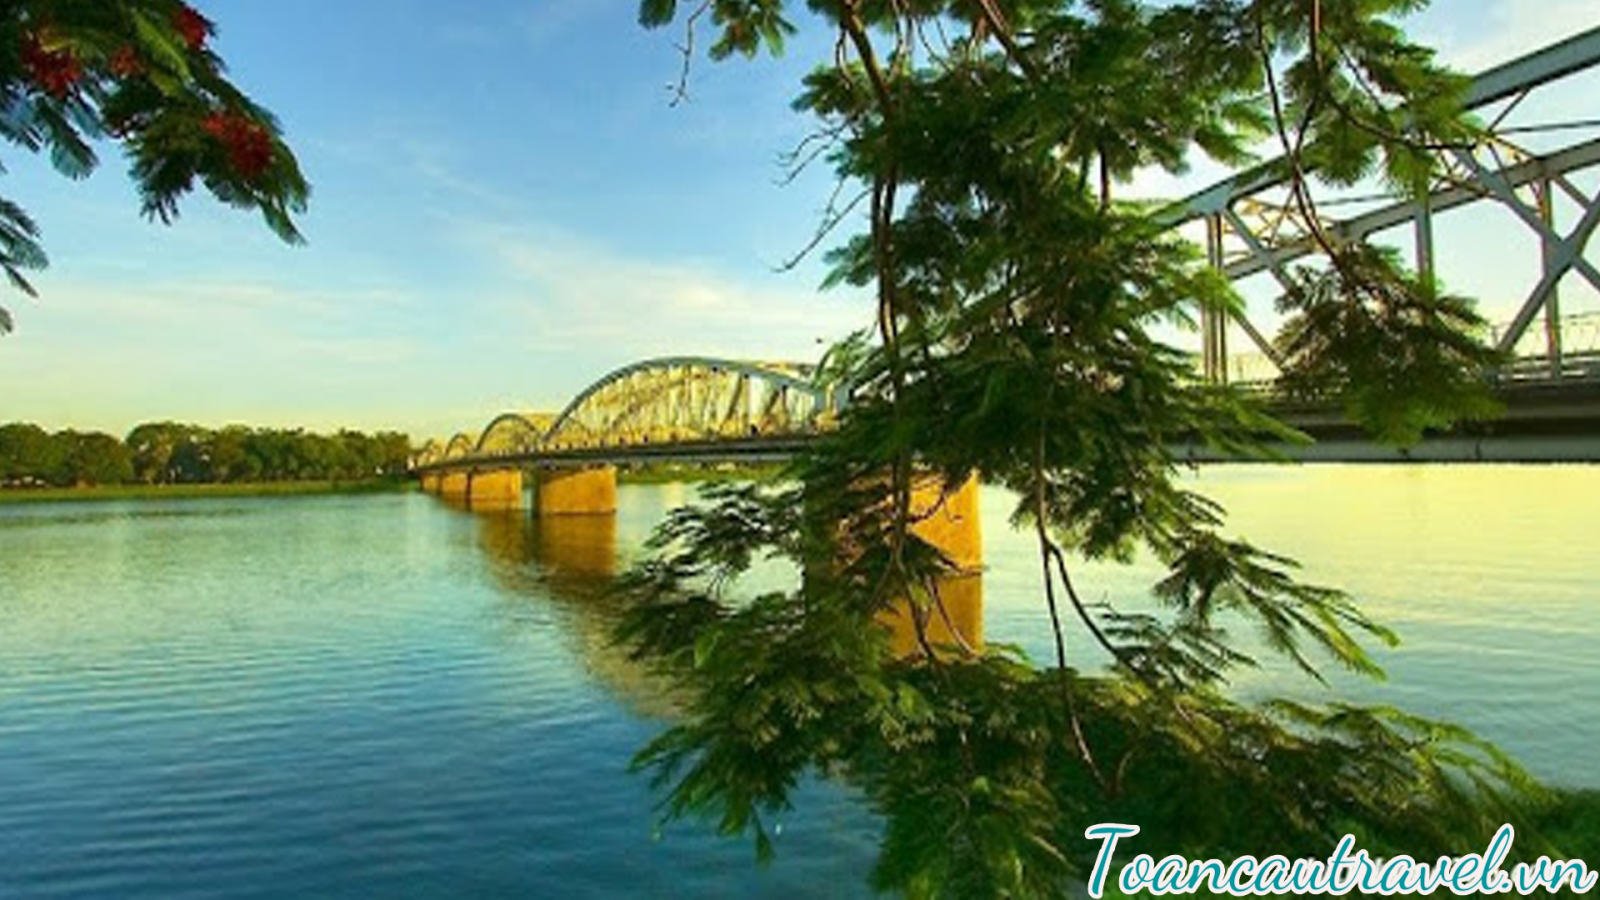 Sông Hương